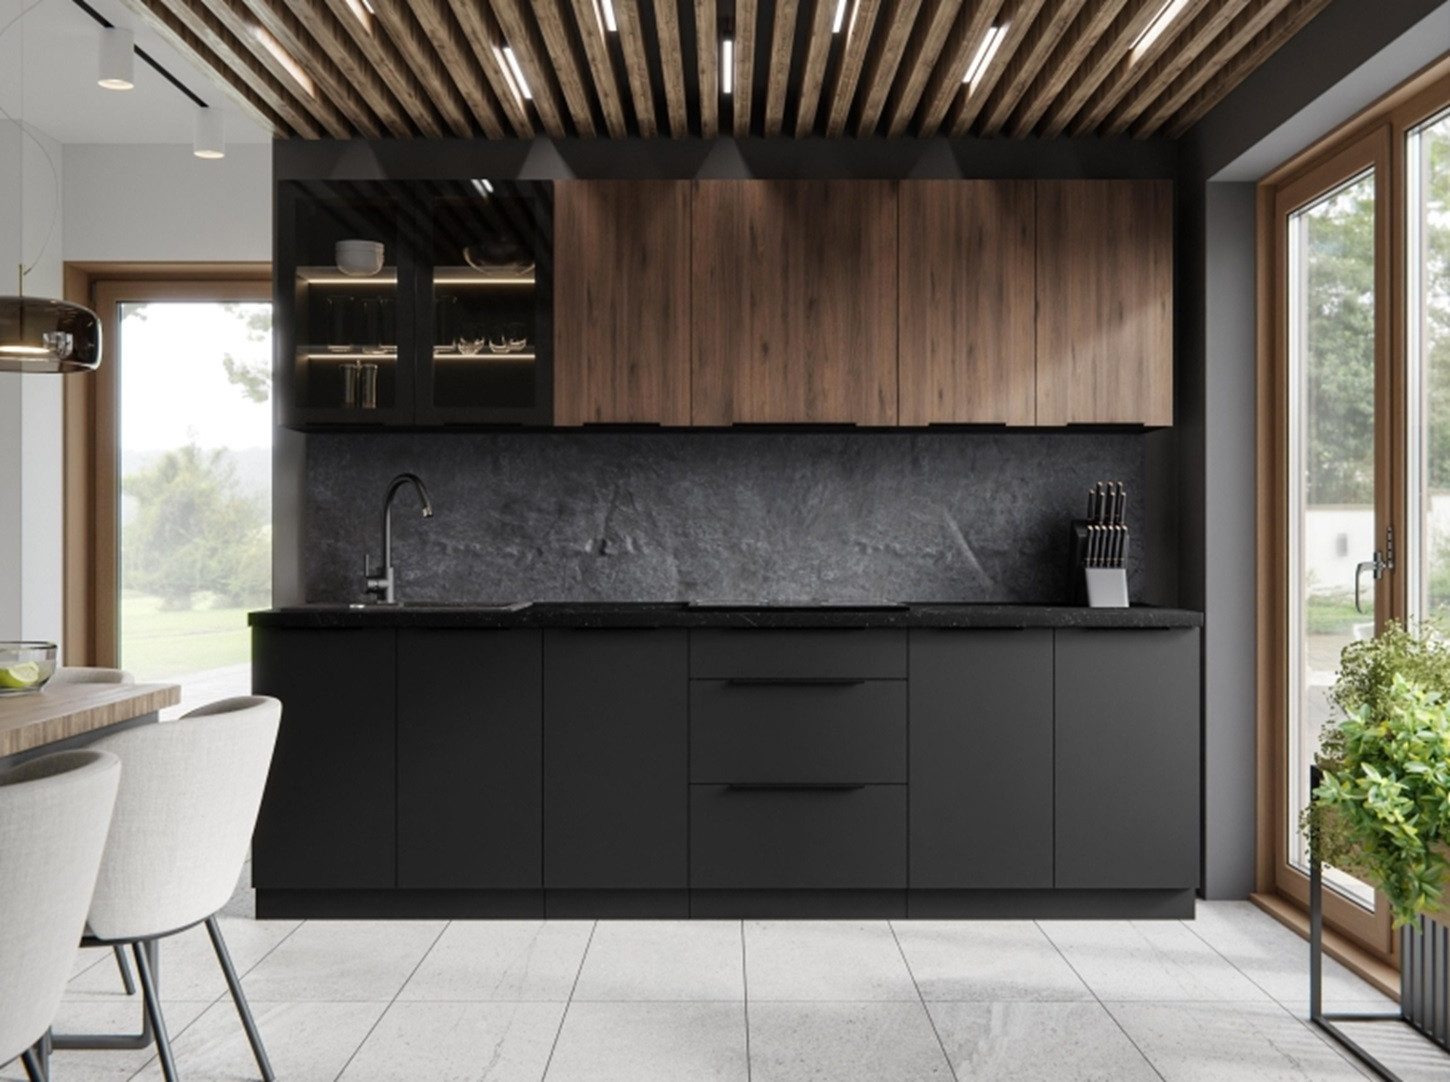 ROYAL24_MARKT Küche - Aktuelle Küchentrends/Stilvolle und funktionale Designs., Modern - Funktional - Nachhaltige Materialien.